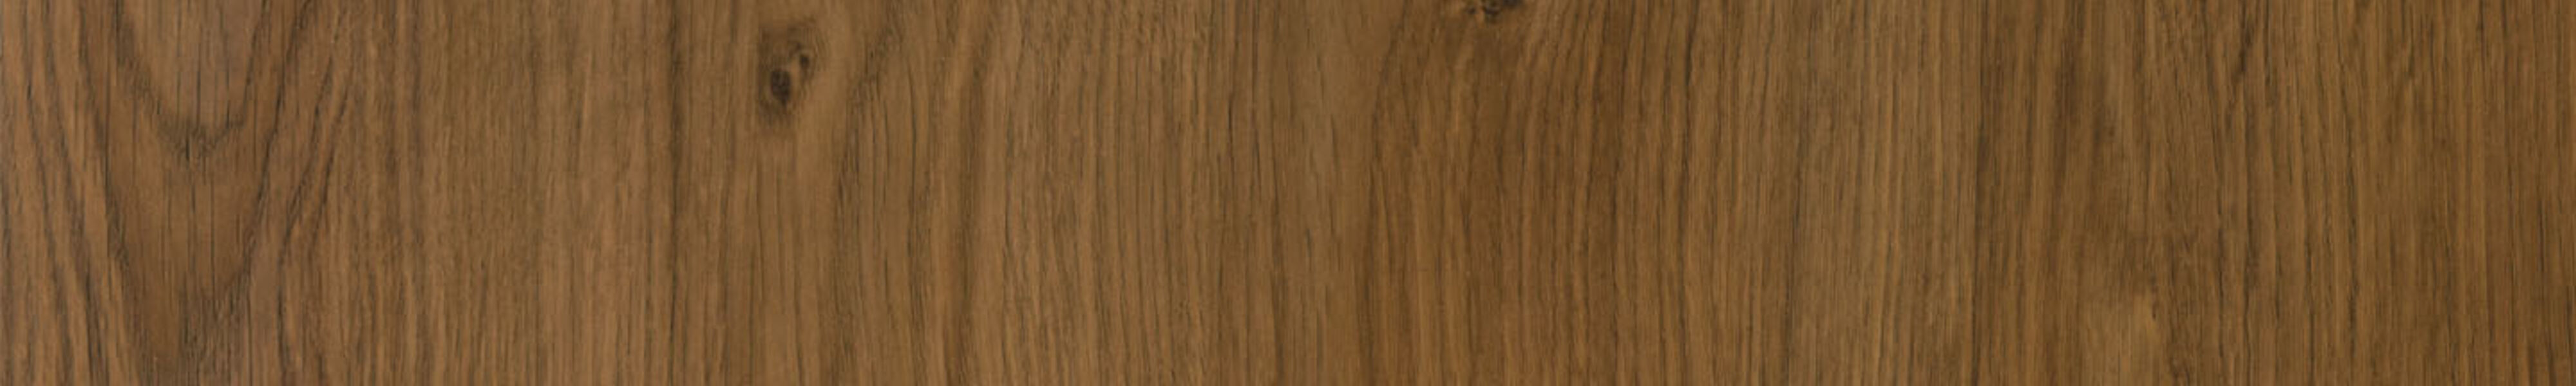 skai® classico Newcastle Oak khaki       0,30 1440